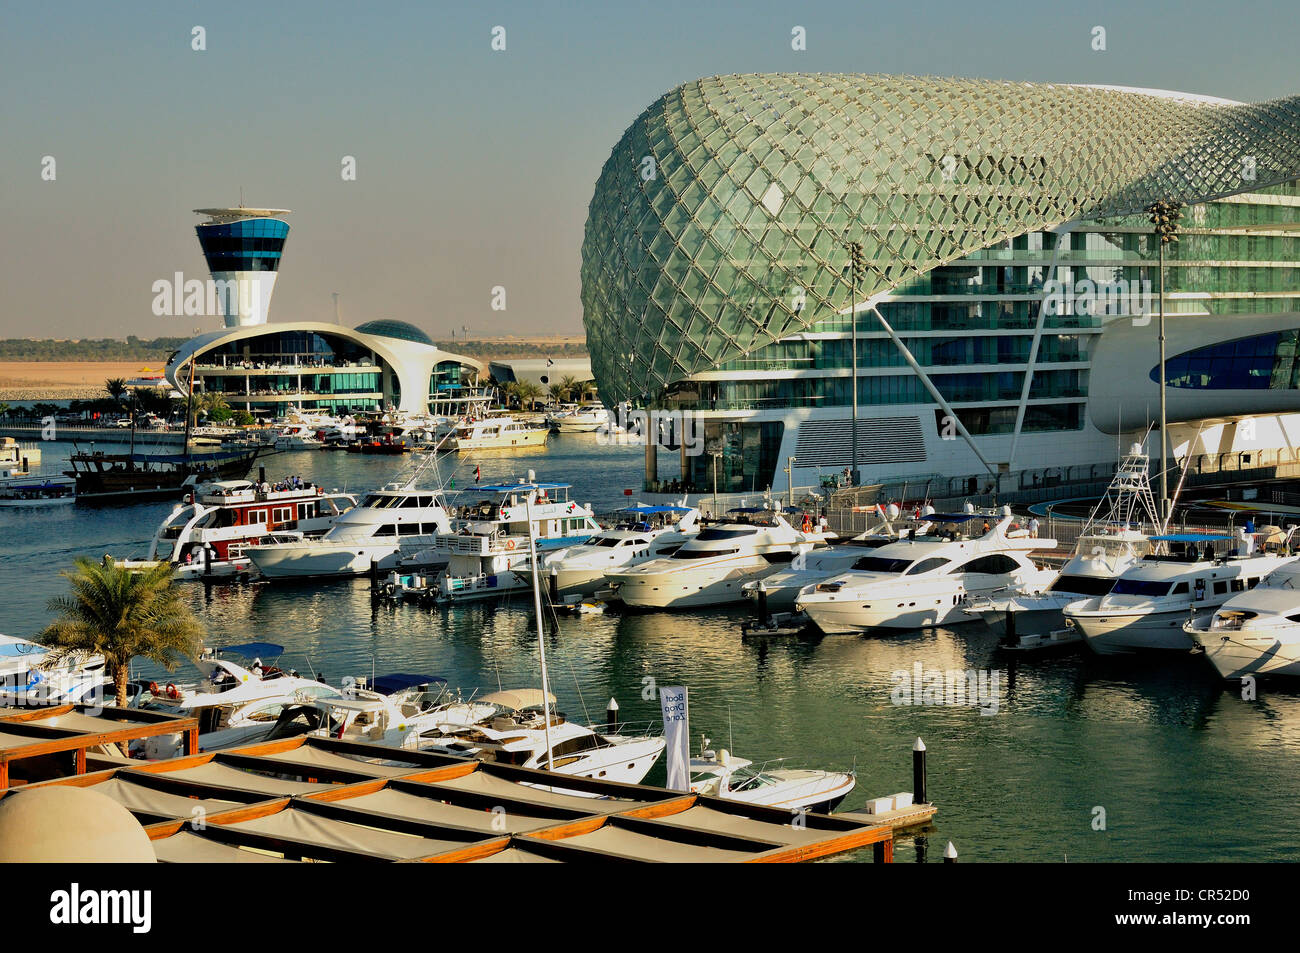 Yas Hotel and marina at the Formula One racetrack Yas Marina Circuit on Yas Island, Abu Dhabi, United Arab Emirates, Arabia Stock Photo